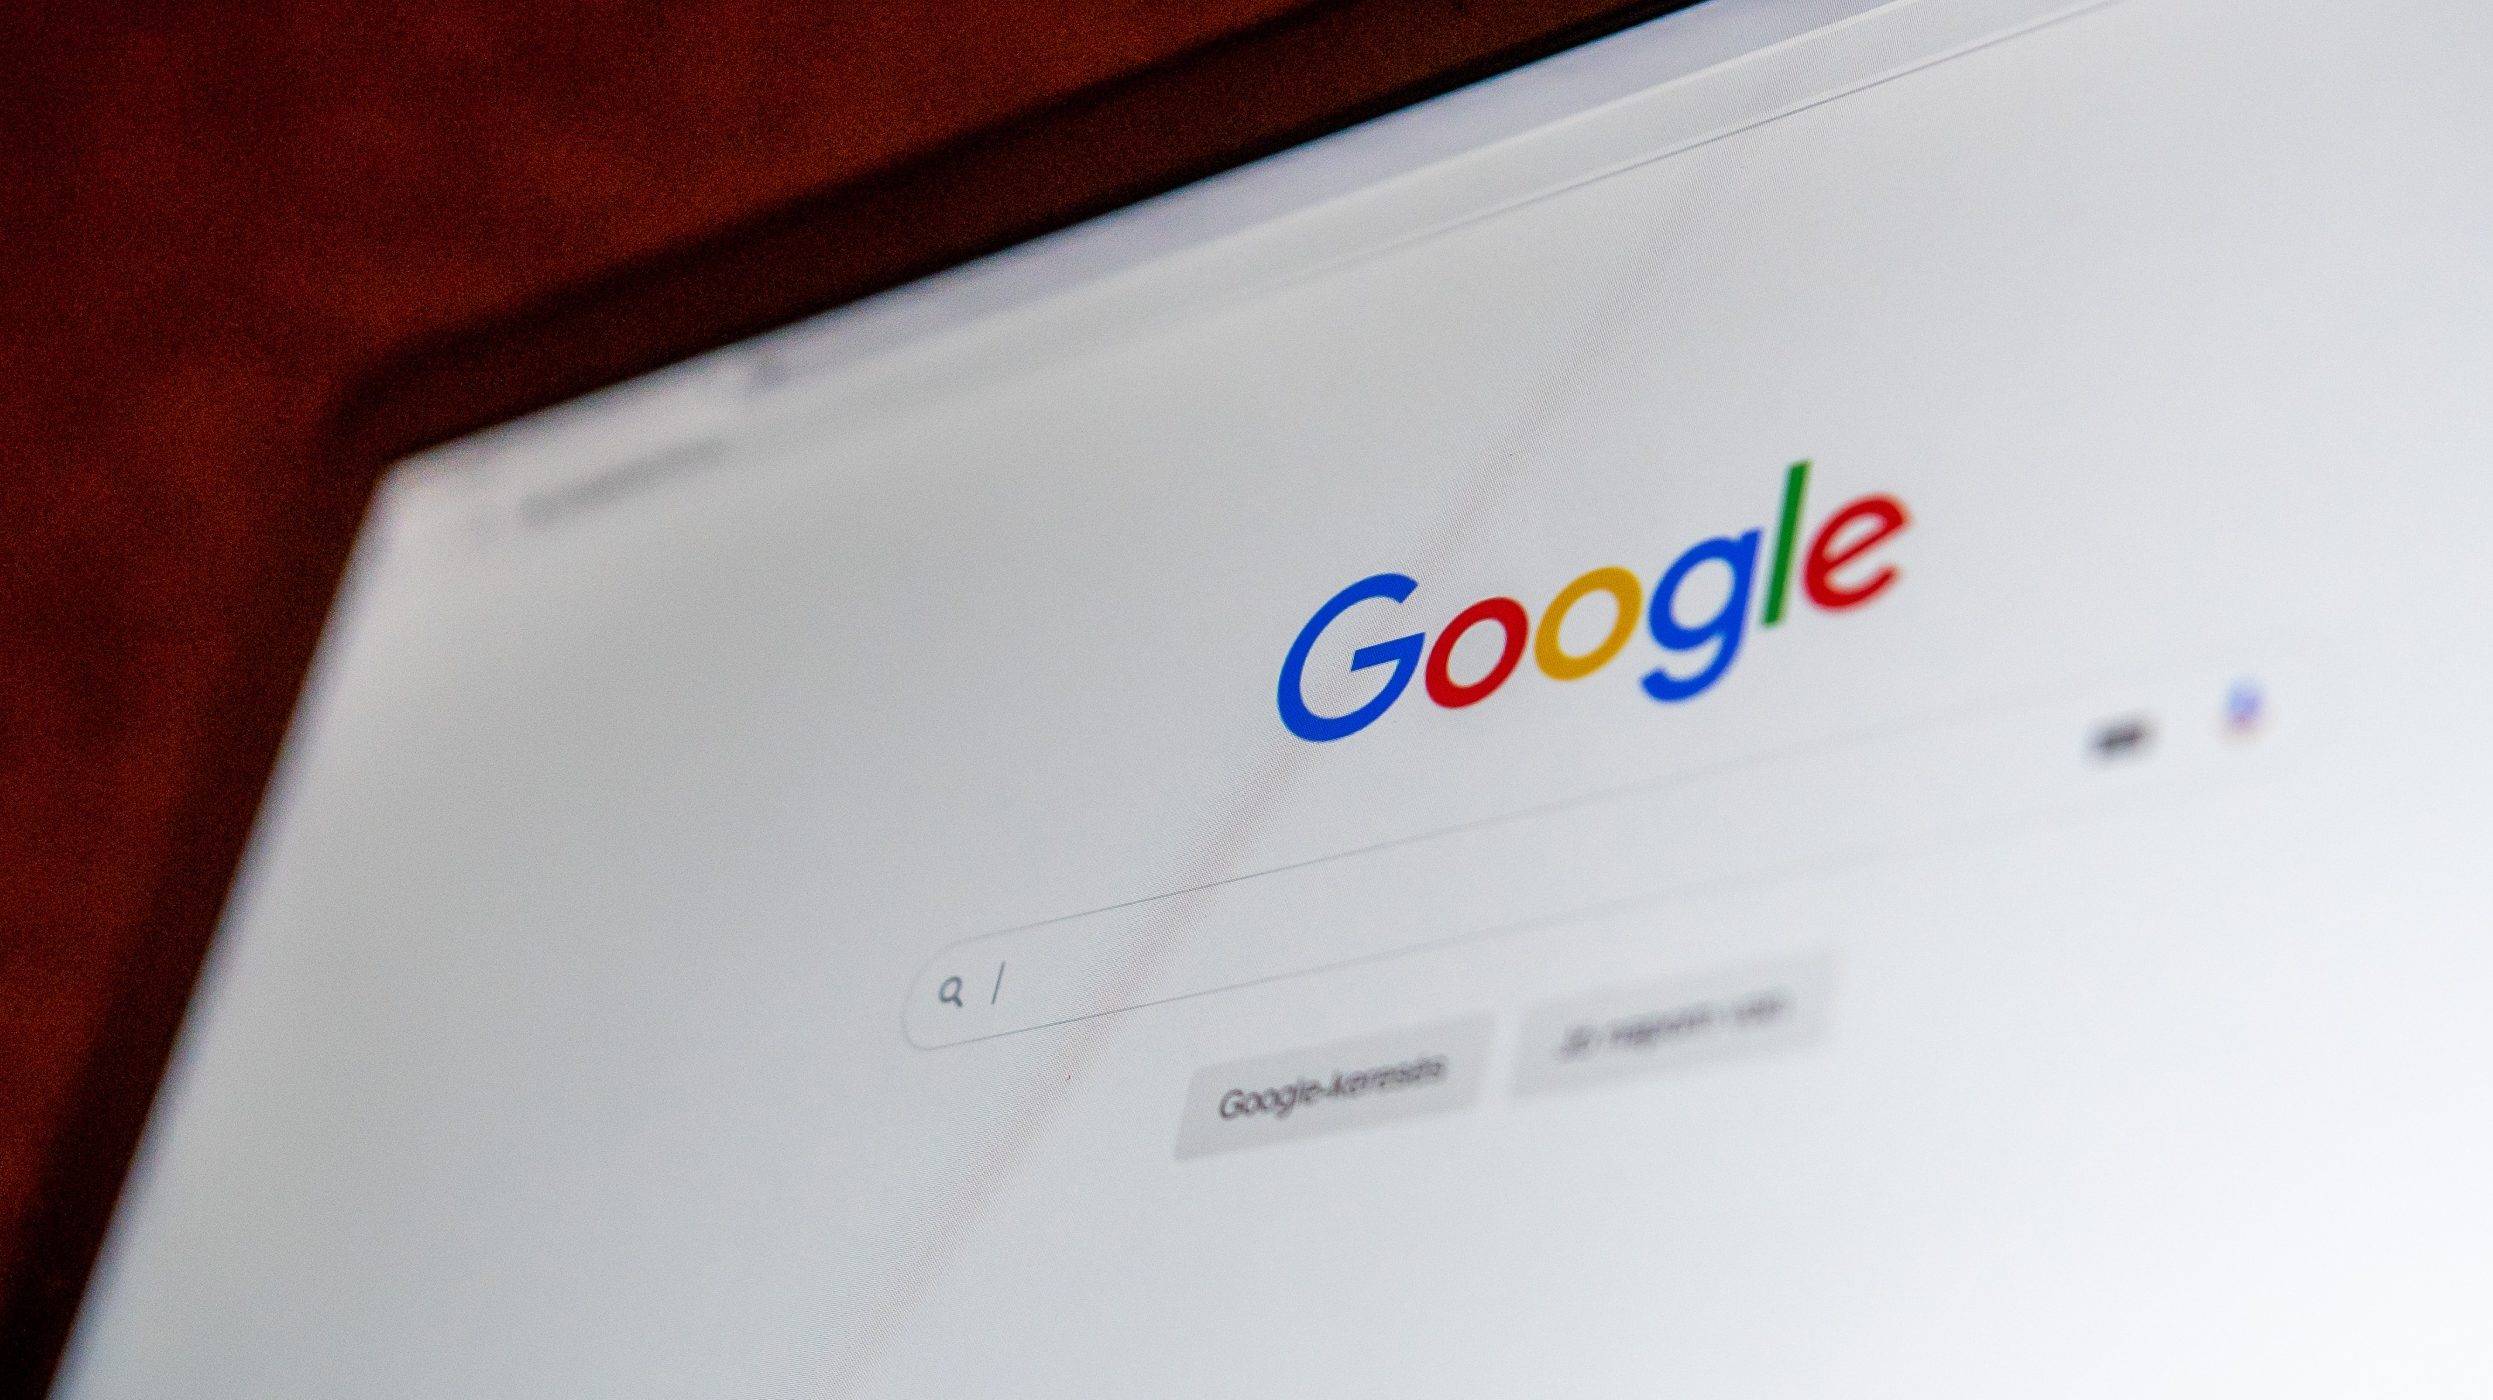 Időt spórol a netezőknek a Google Chrome újítása